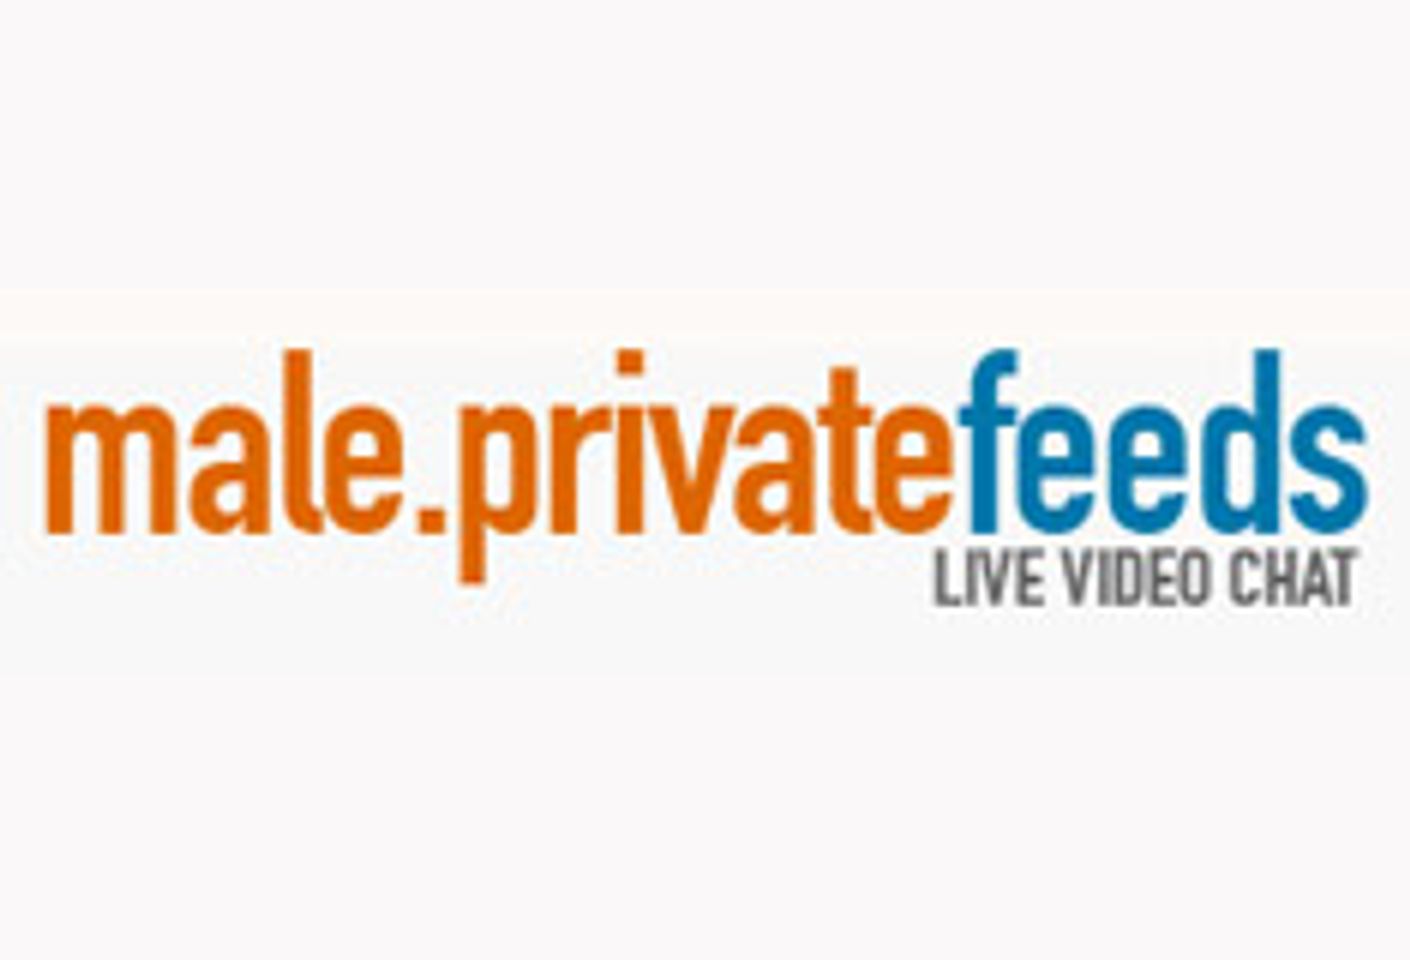 LiveBucks.com Launches Redesigned male.privatefeeds.com